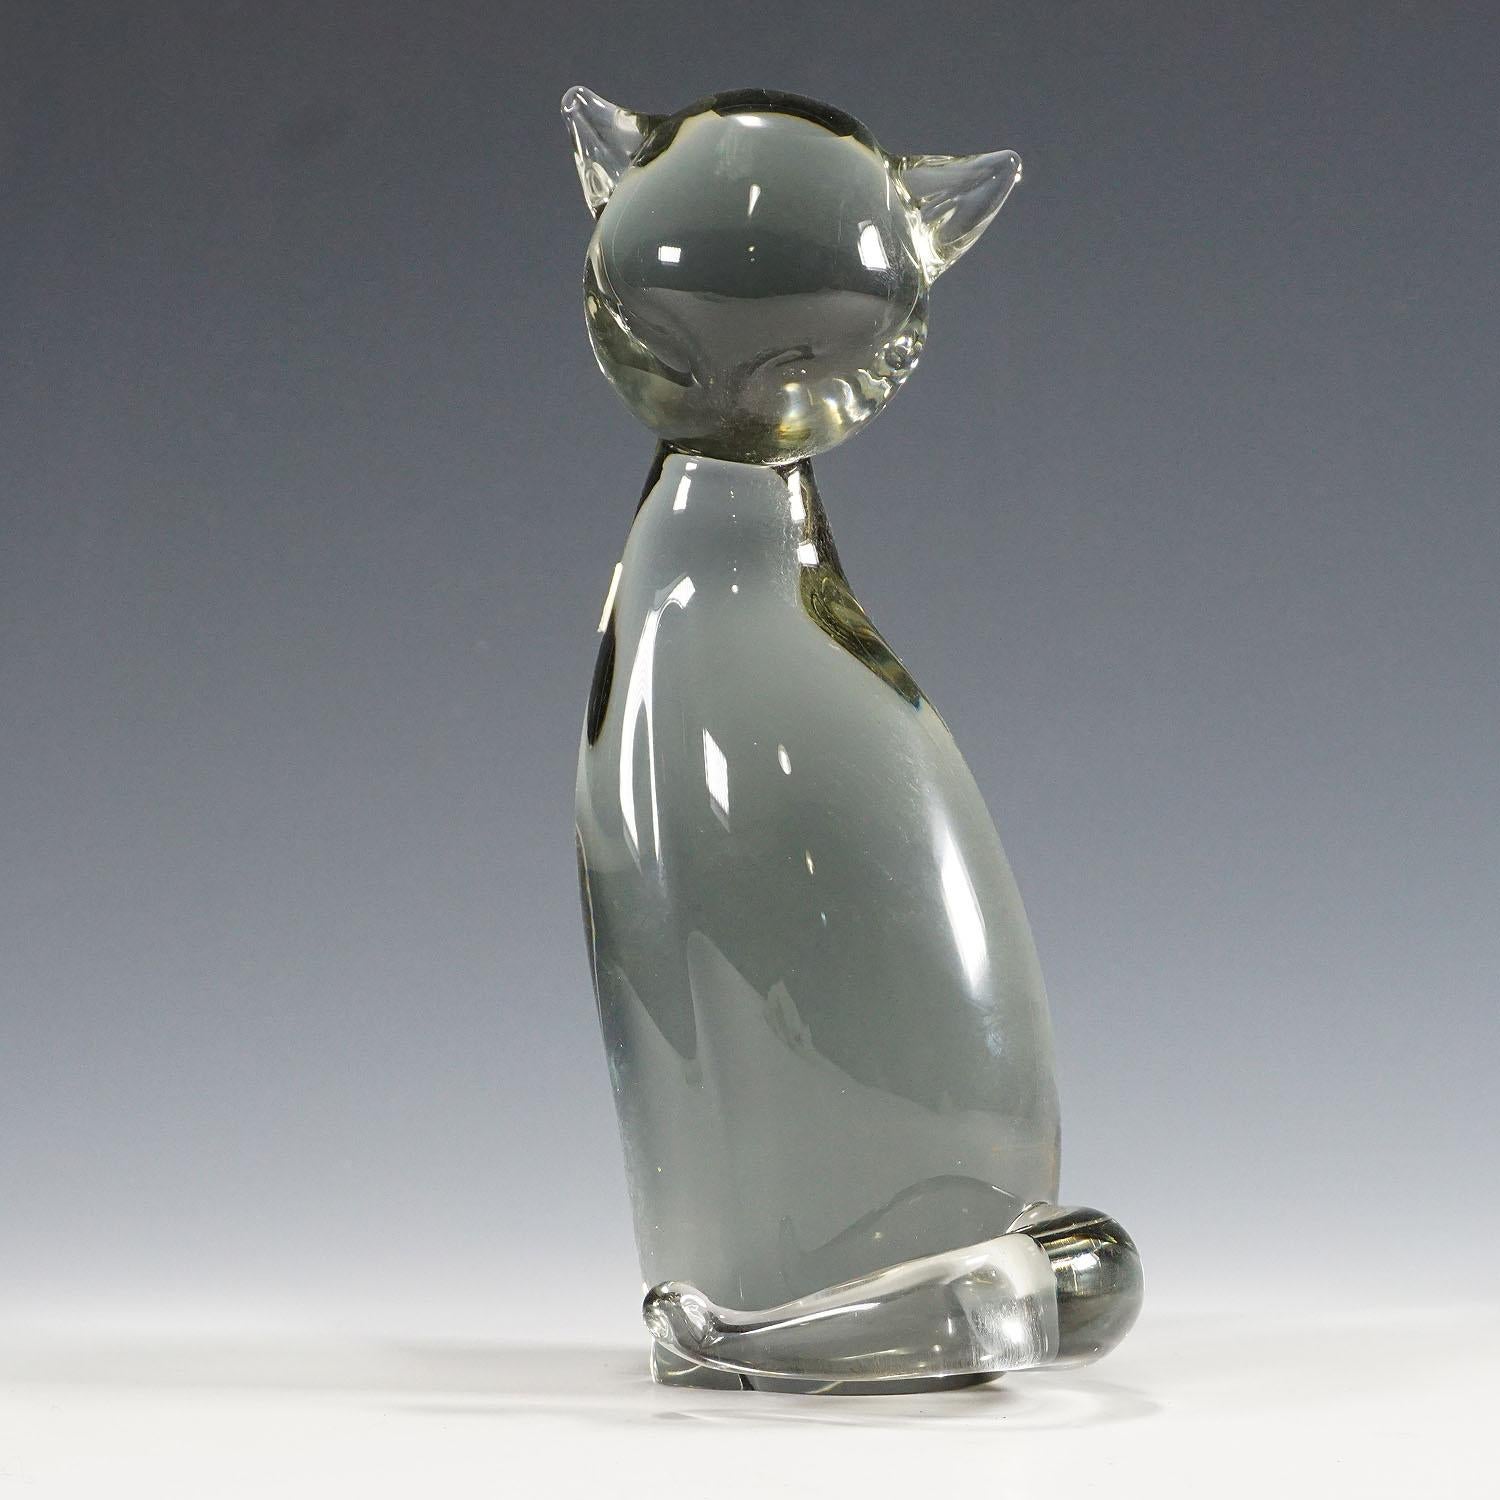 Sculpture d'un chat stylisé Design/One ca. 1970

Une jolie sculpture d'un chat stylisé en verre gris fumée. Fabriqué à la main dans la manufacture de verre Gral, en Allemagne. Il a été conçu par Livio Seguso vers 1970. Le corps porte l'étiquette